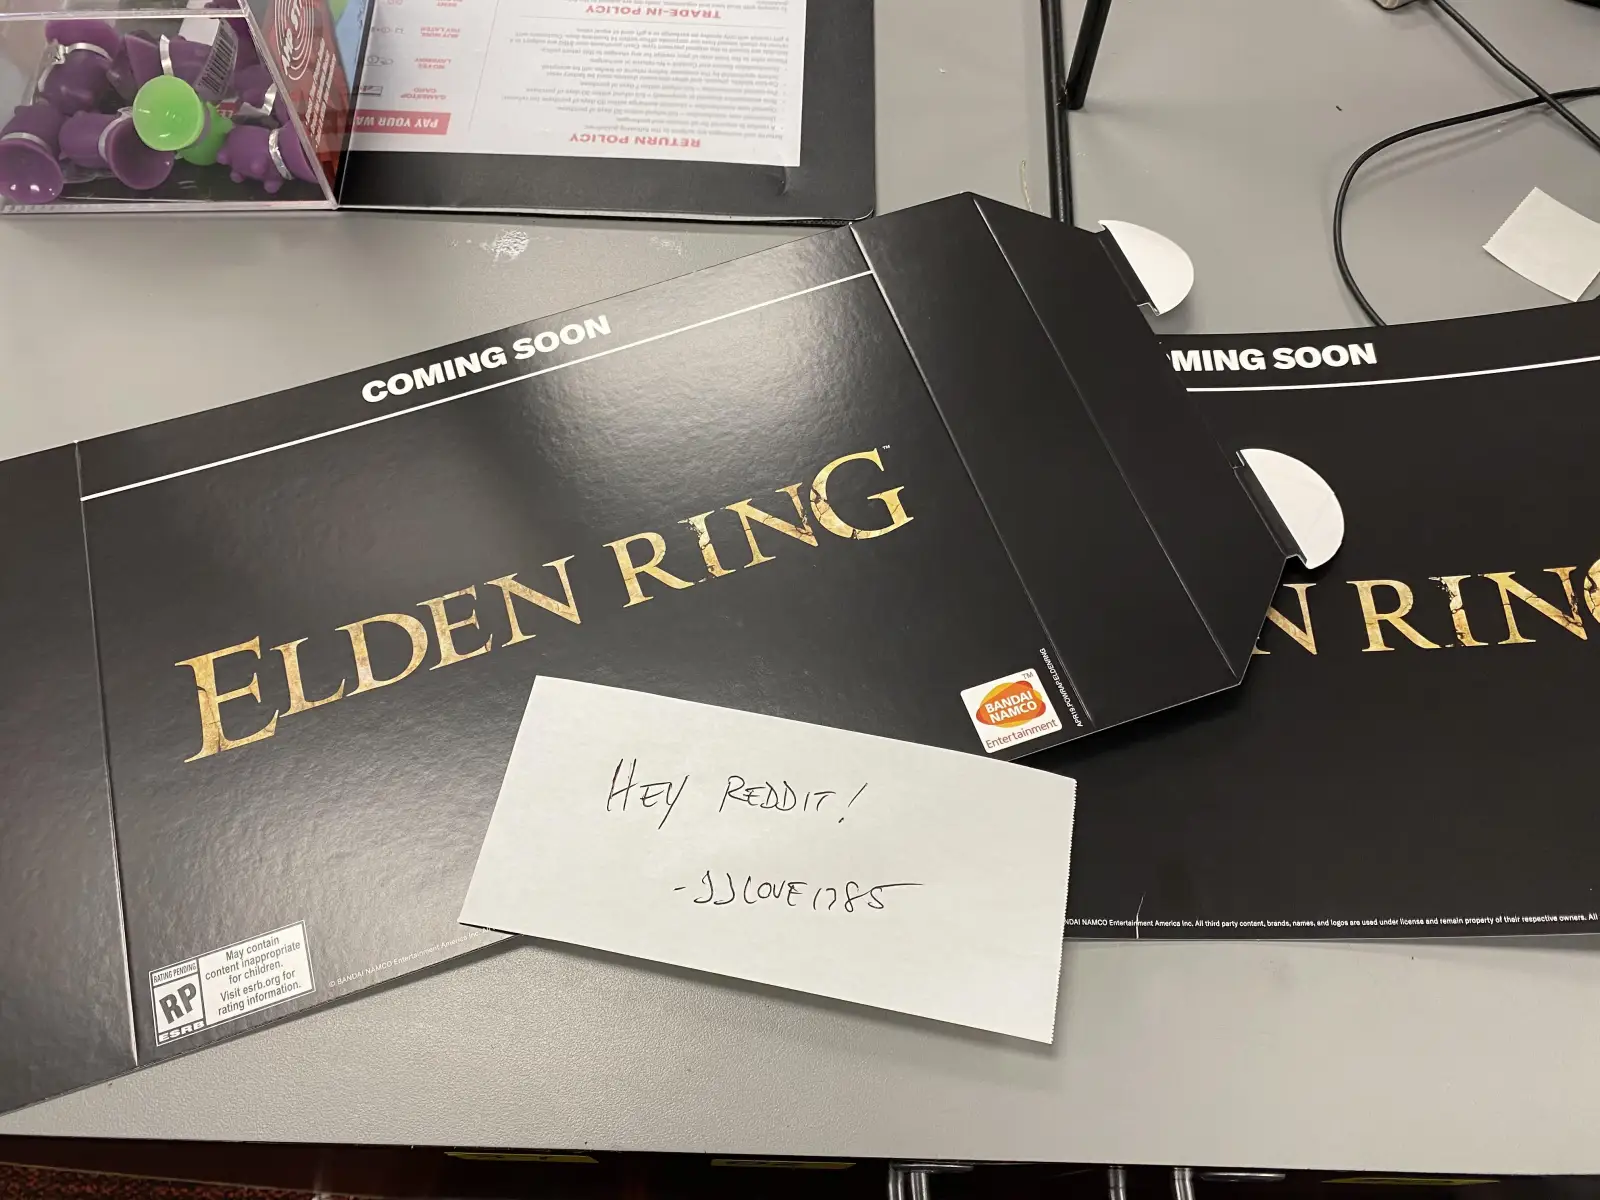 疑似《Elden Ring》宣传物料被Reddit用户发了出来